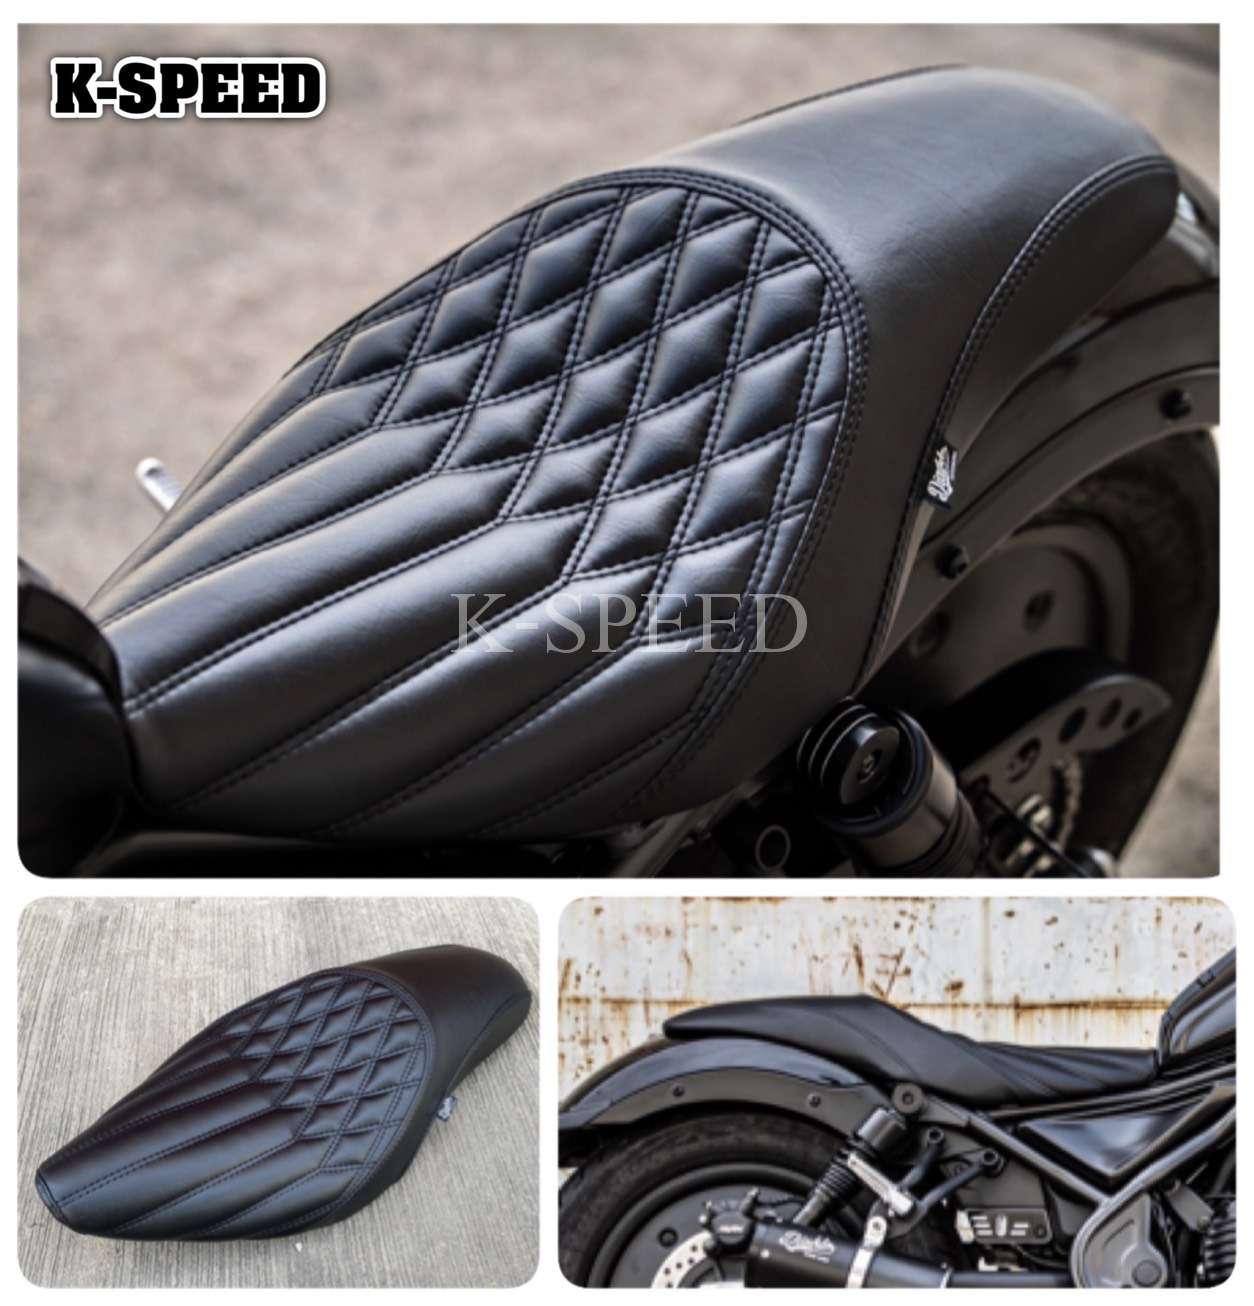 K-SPEED-RB0130 Seat Rebel250, 300 & 500: Rebel Black Armor ...